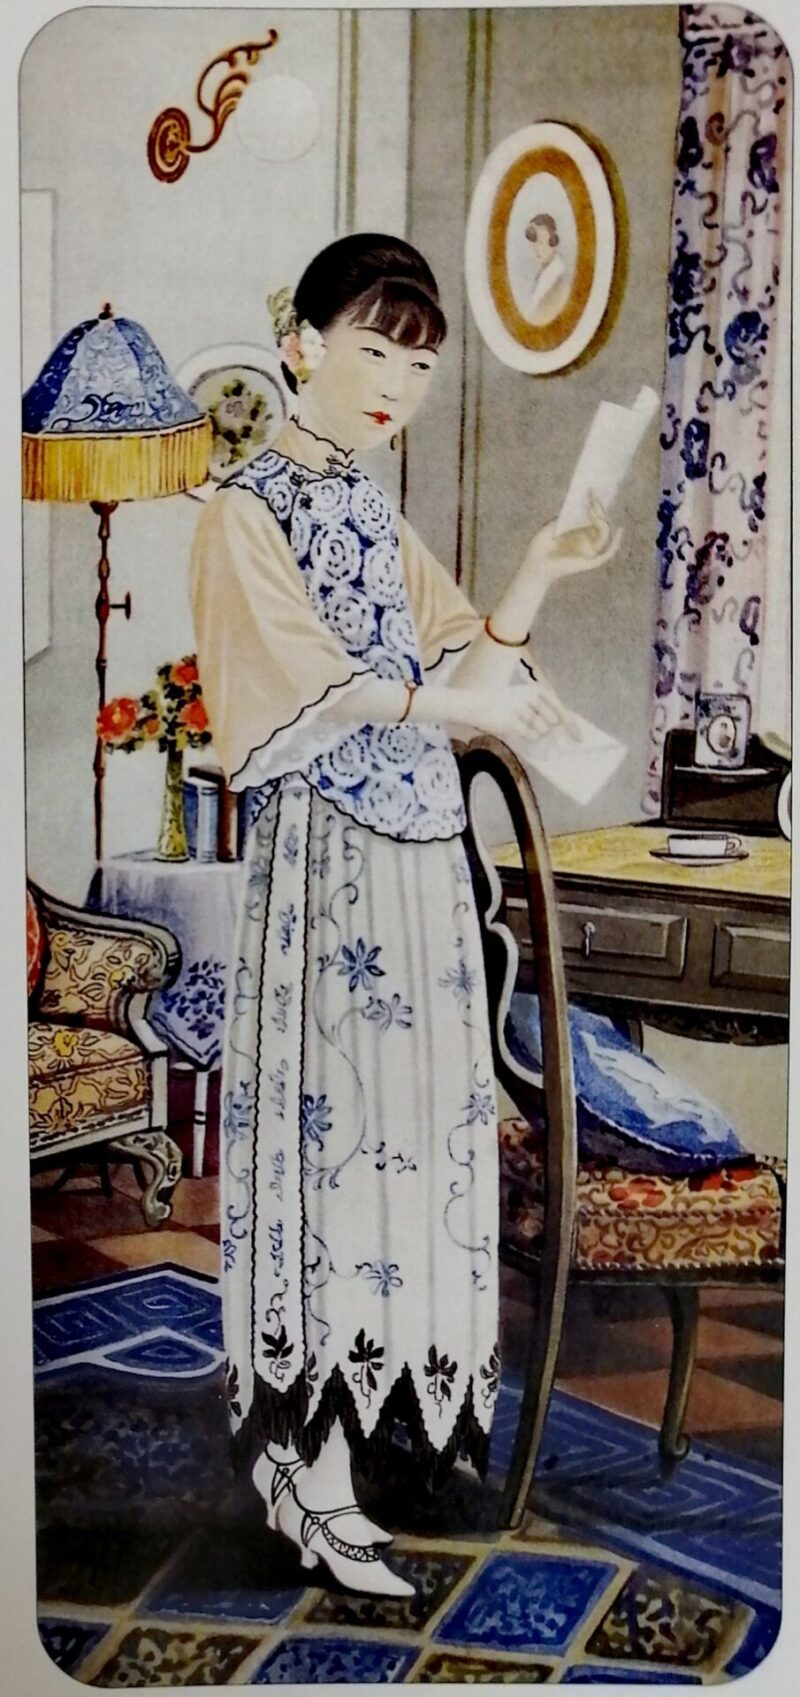 1930年代 旗袍の黄金時代 旗袍的新故事